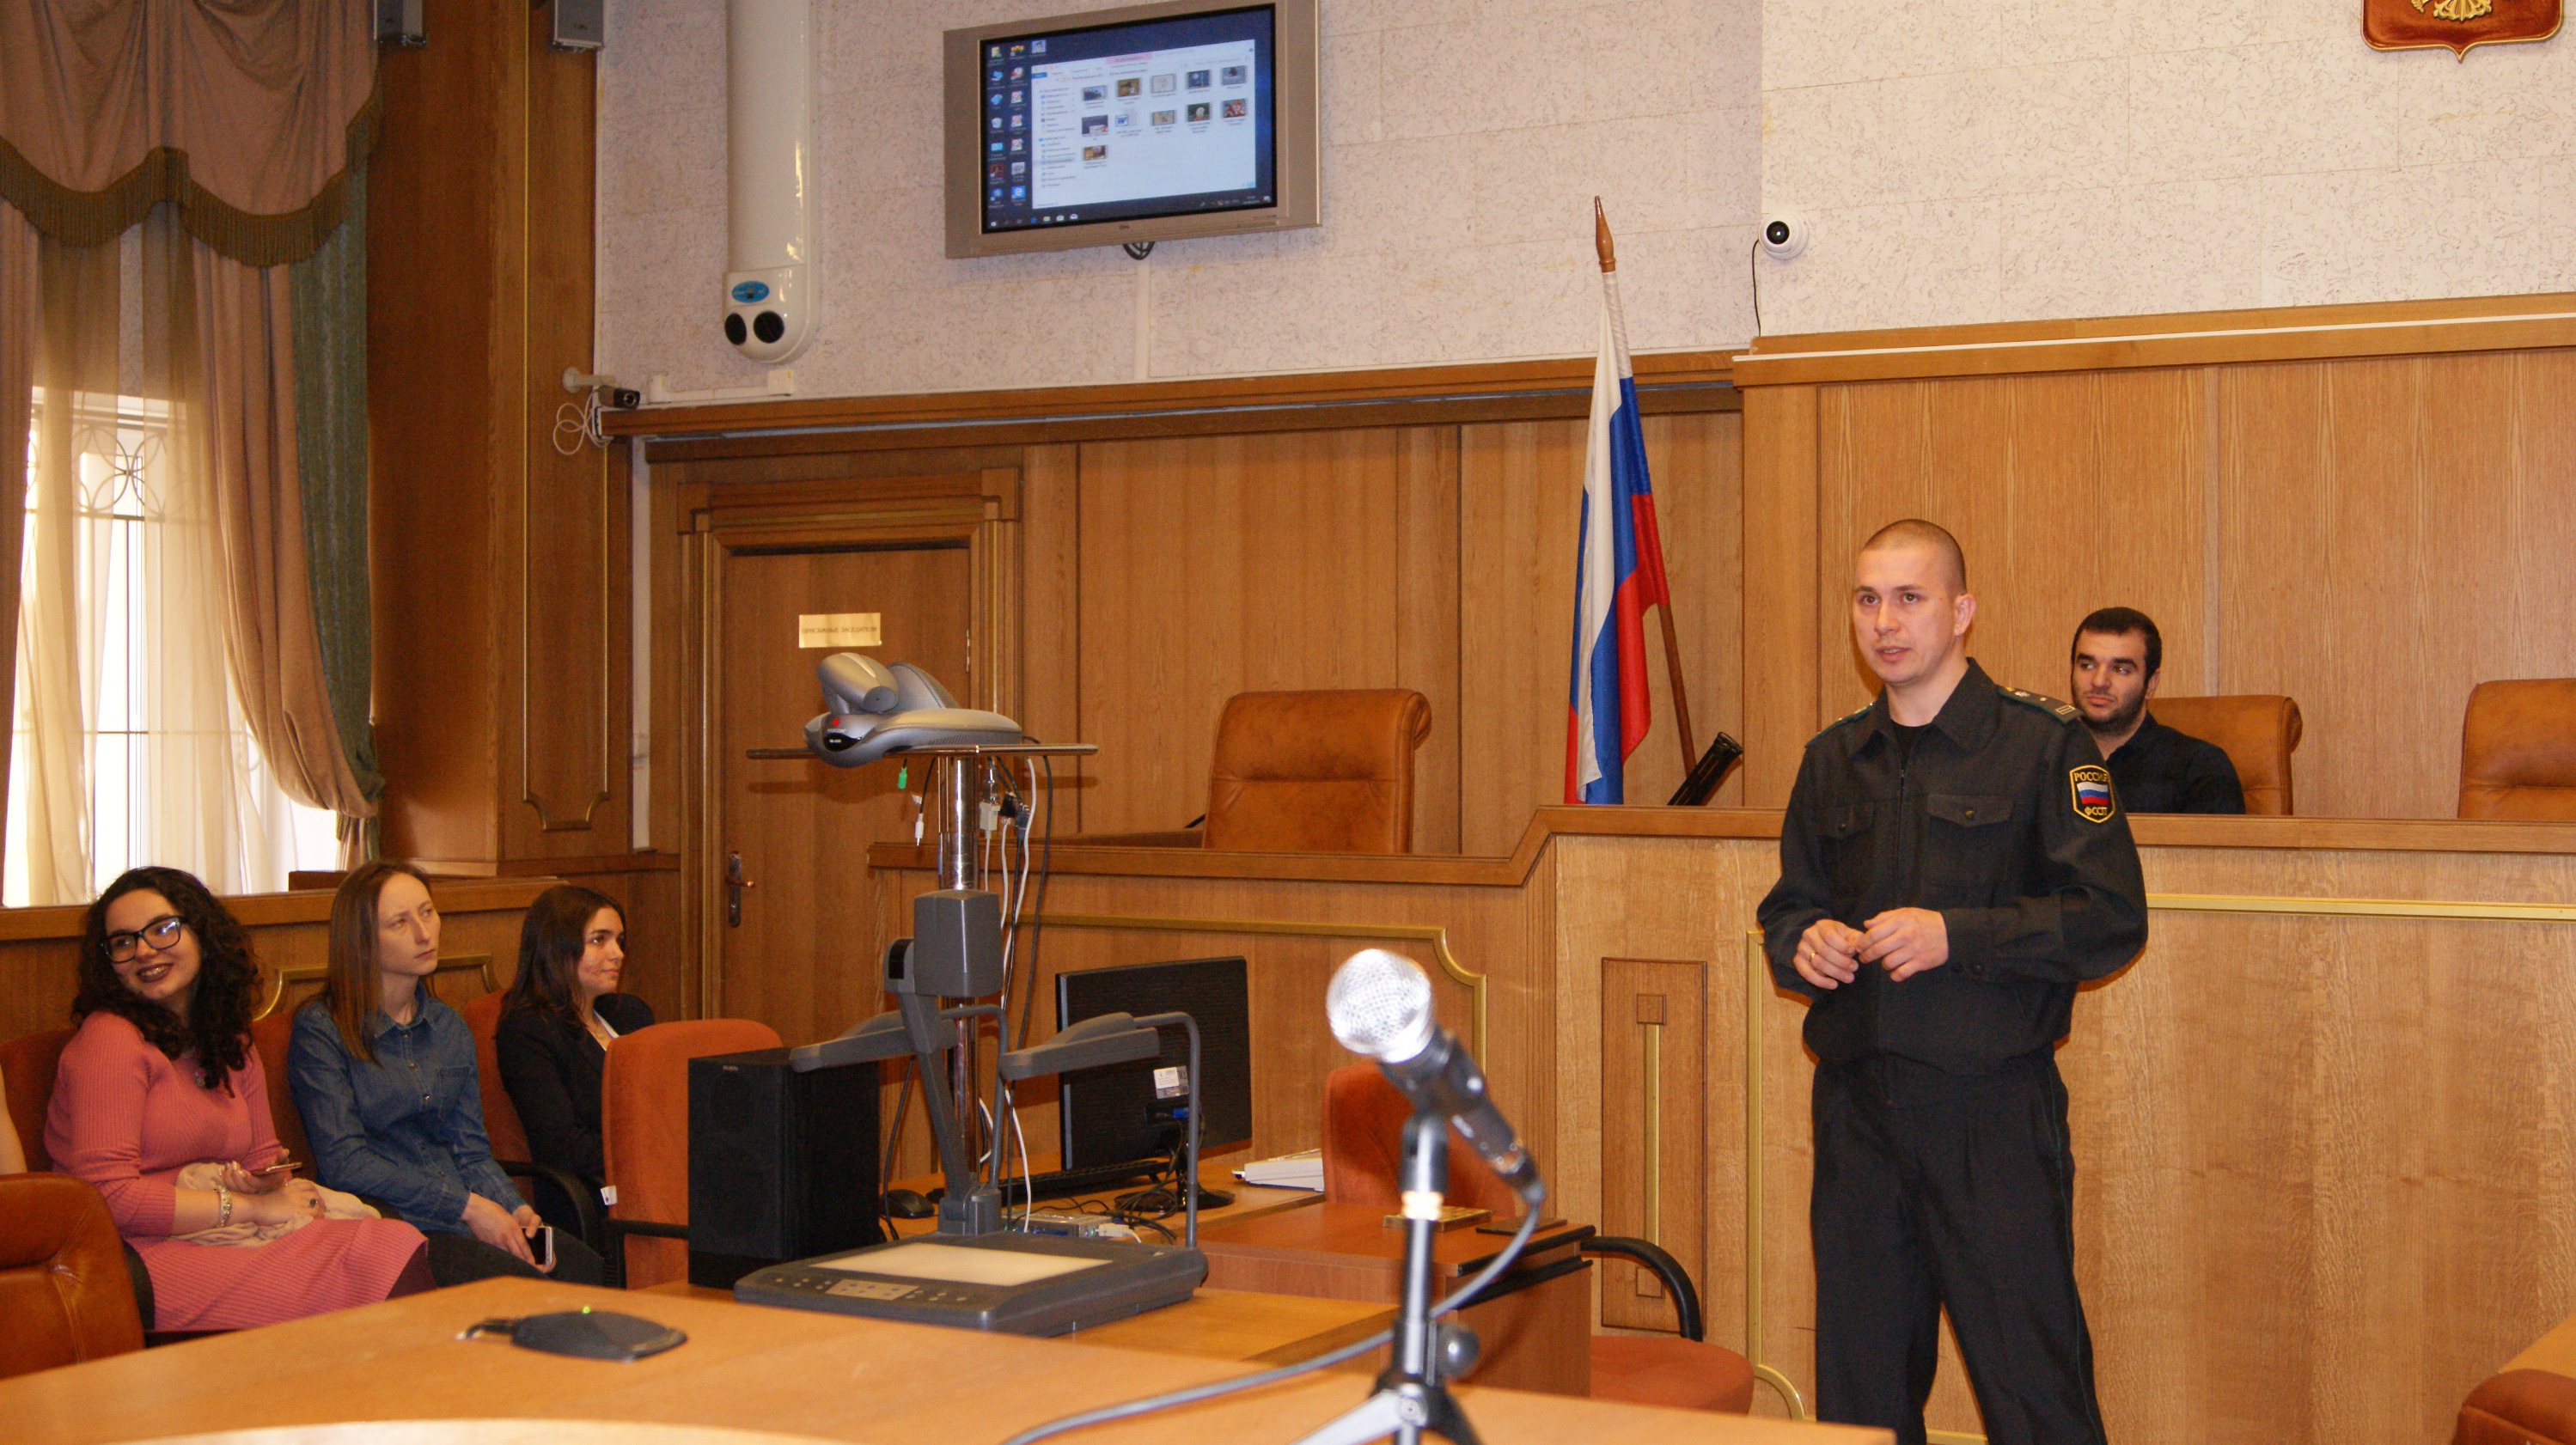 Тюменский судебный пристав, проводивший уроки для школьников, задержан с наркотиками